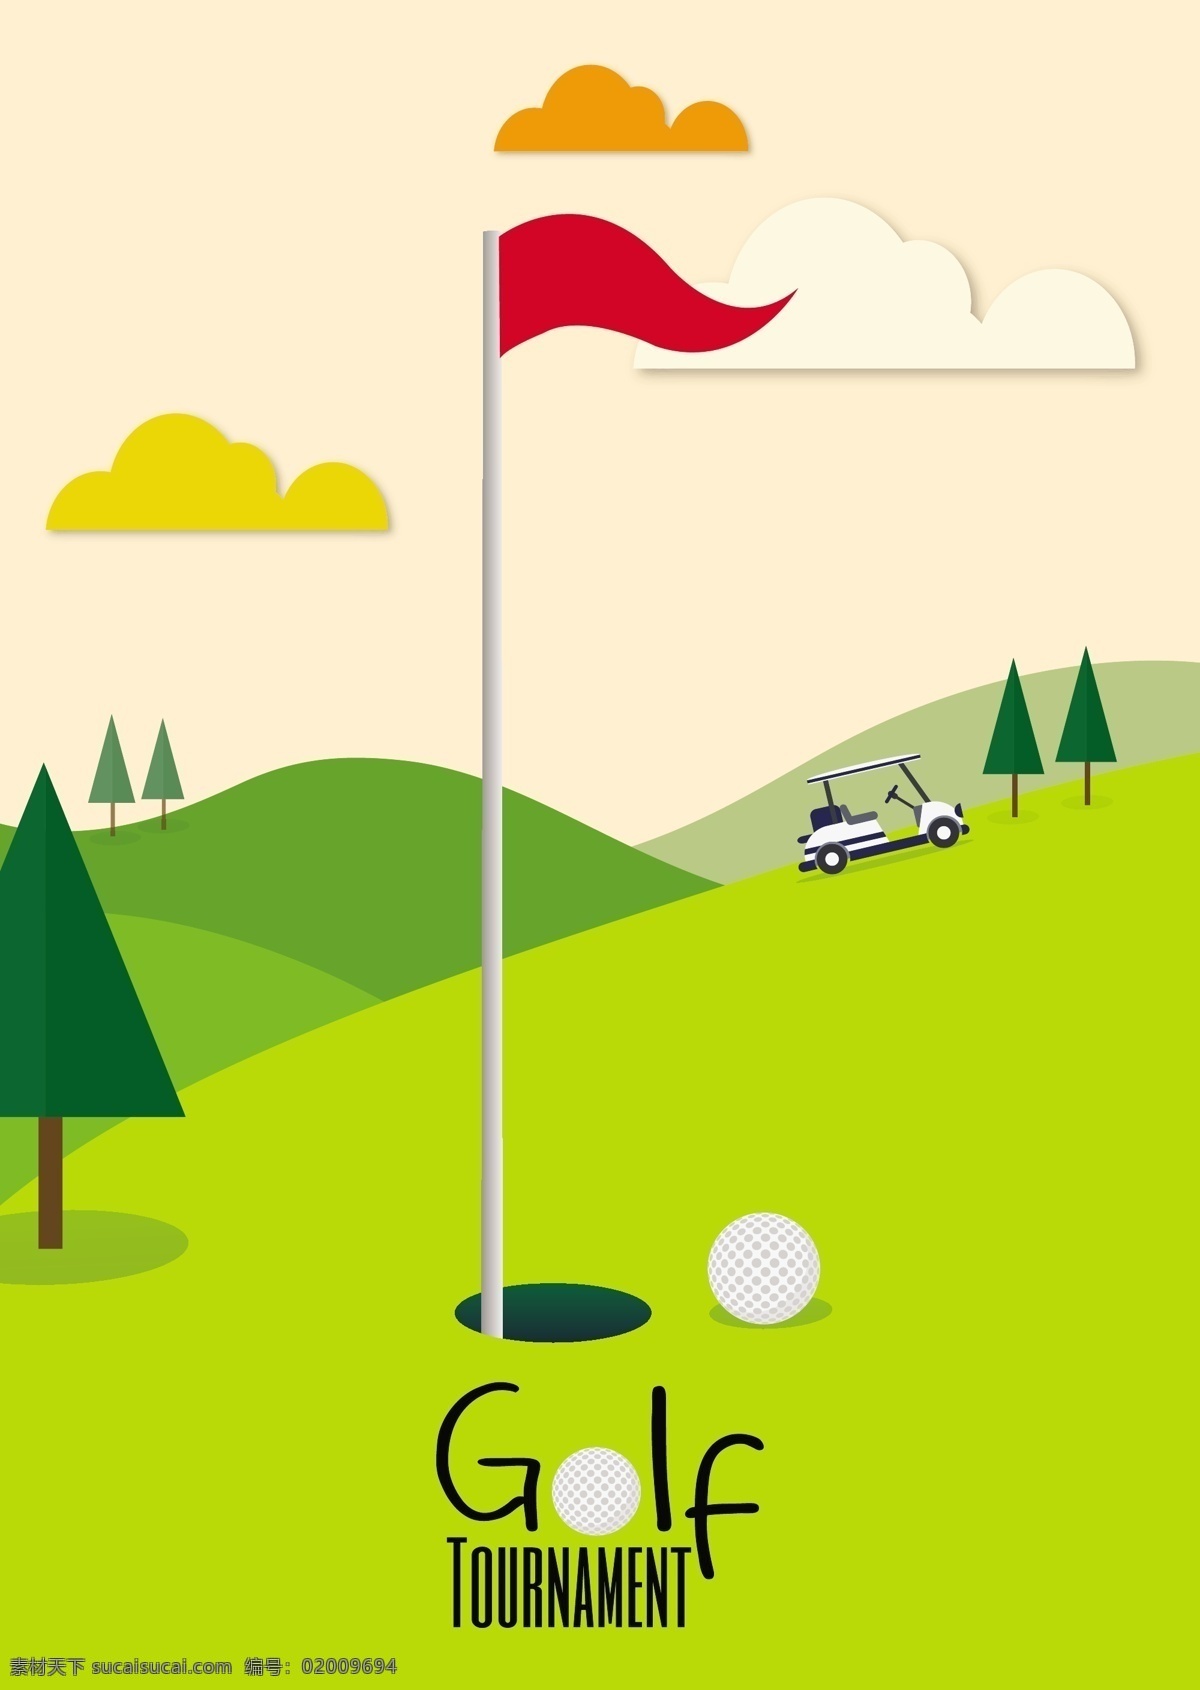 高尔夫球场 矢量 背景 高尔夫 球 球场 绿色高尔夫球 球场矢量背景 树林 旗帜 矢量背景 golf